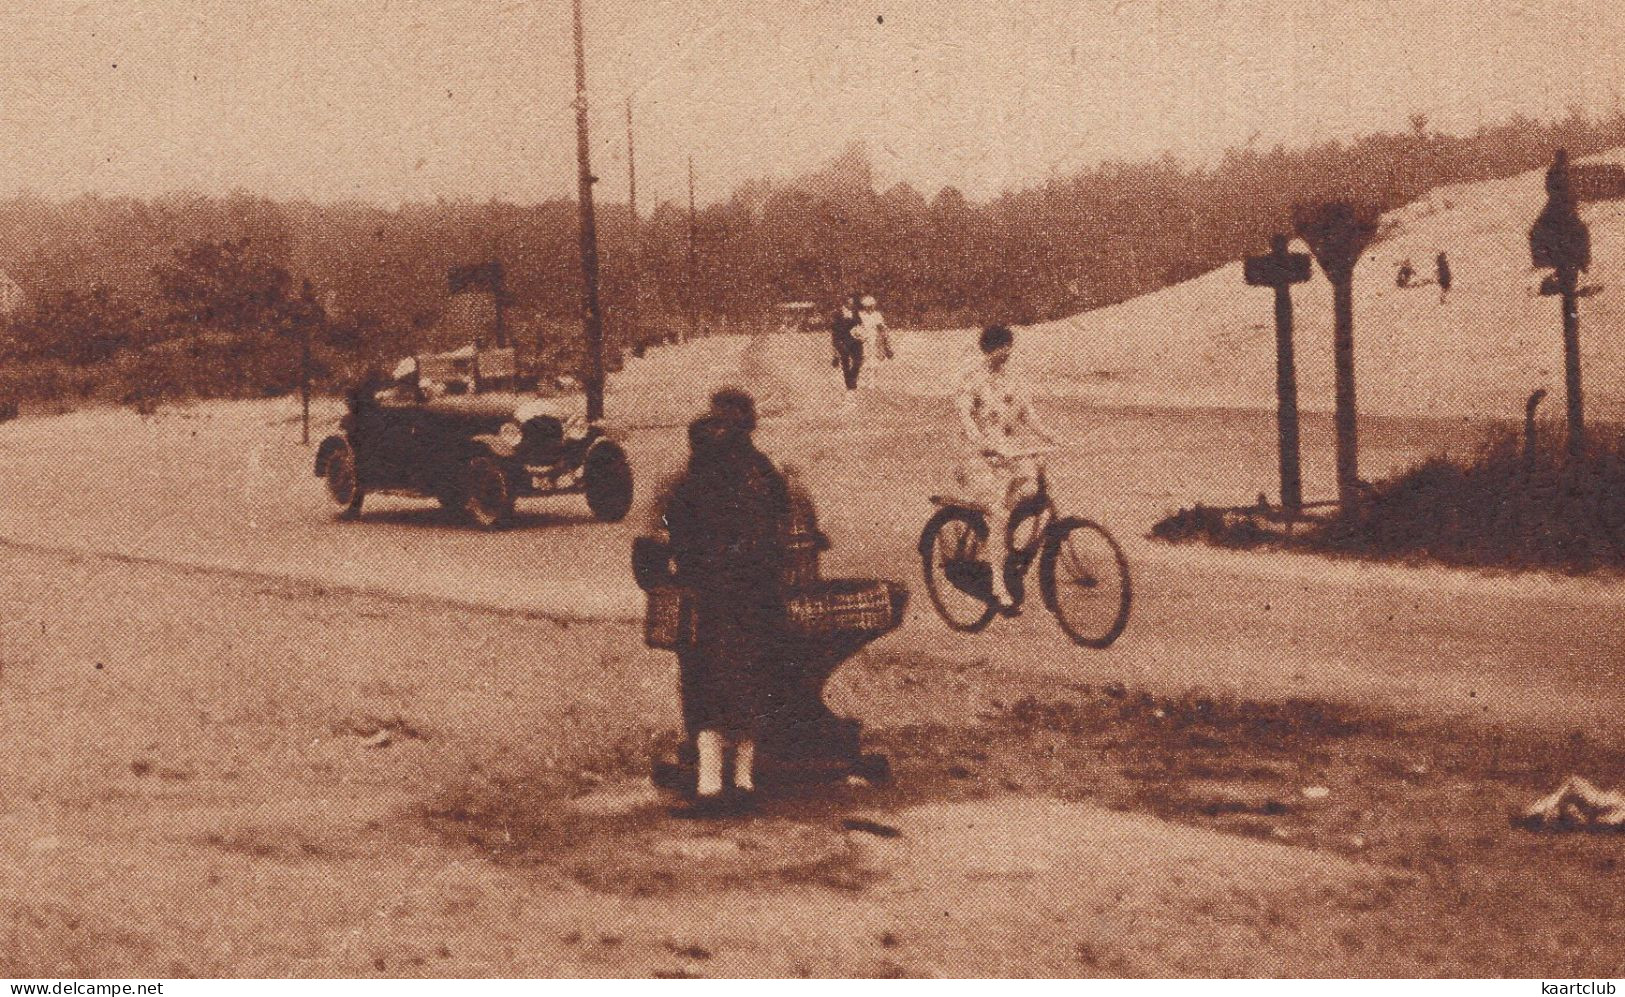 Overveen: OLDTIMER AUTO / CAR CABRIOLET 1910-1920, FIETSTER / BICYCLISTE - Op De Nieuwen Zeeweg - (Holland) - Passenger Cars